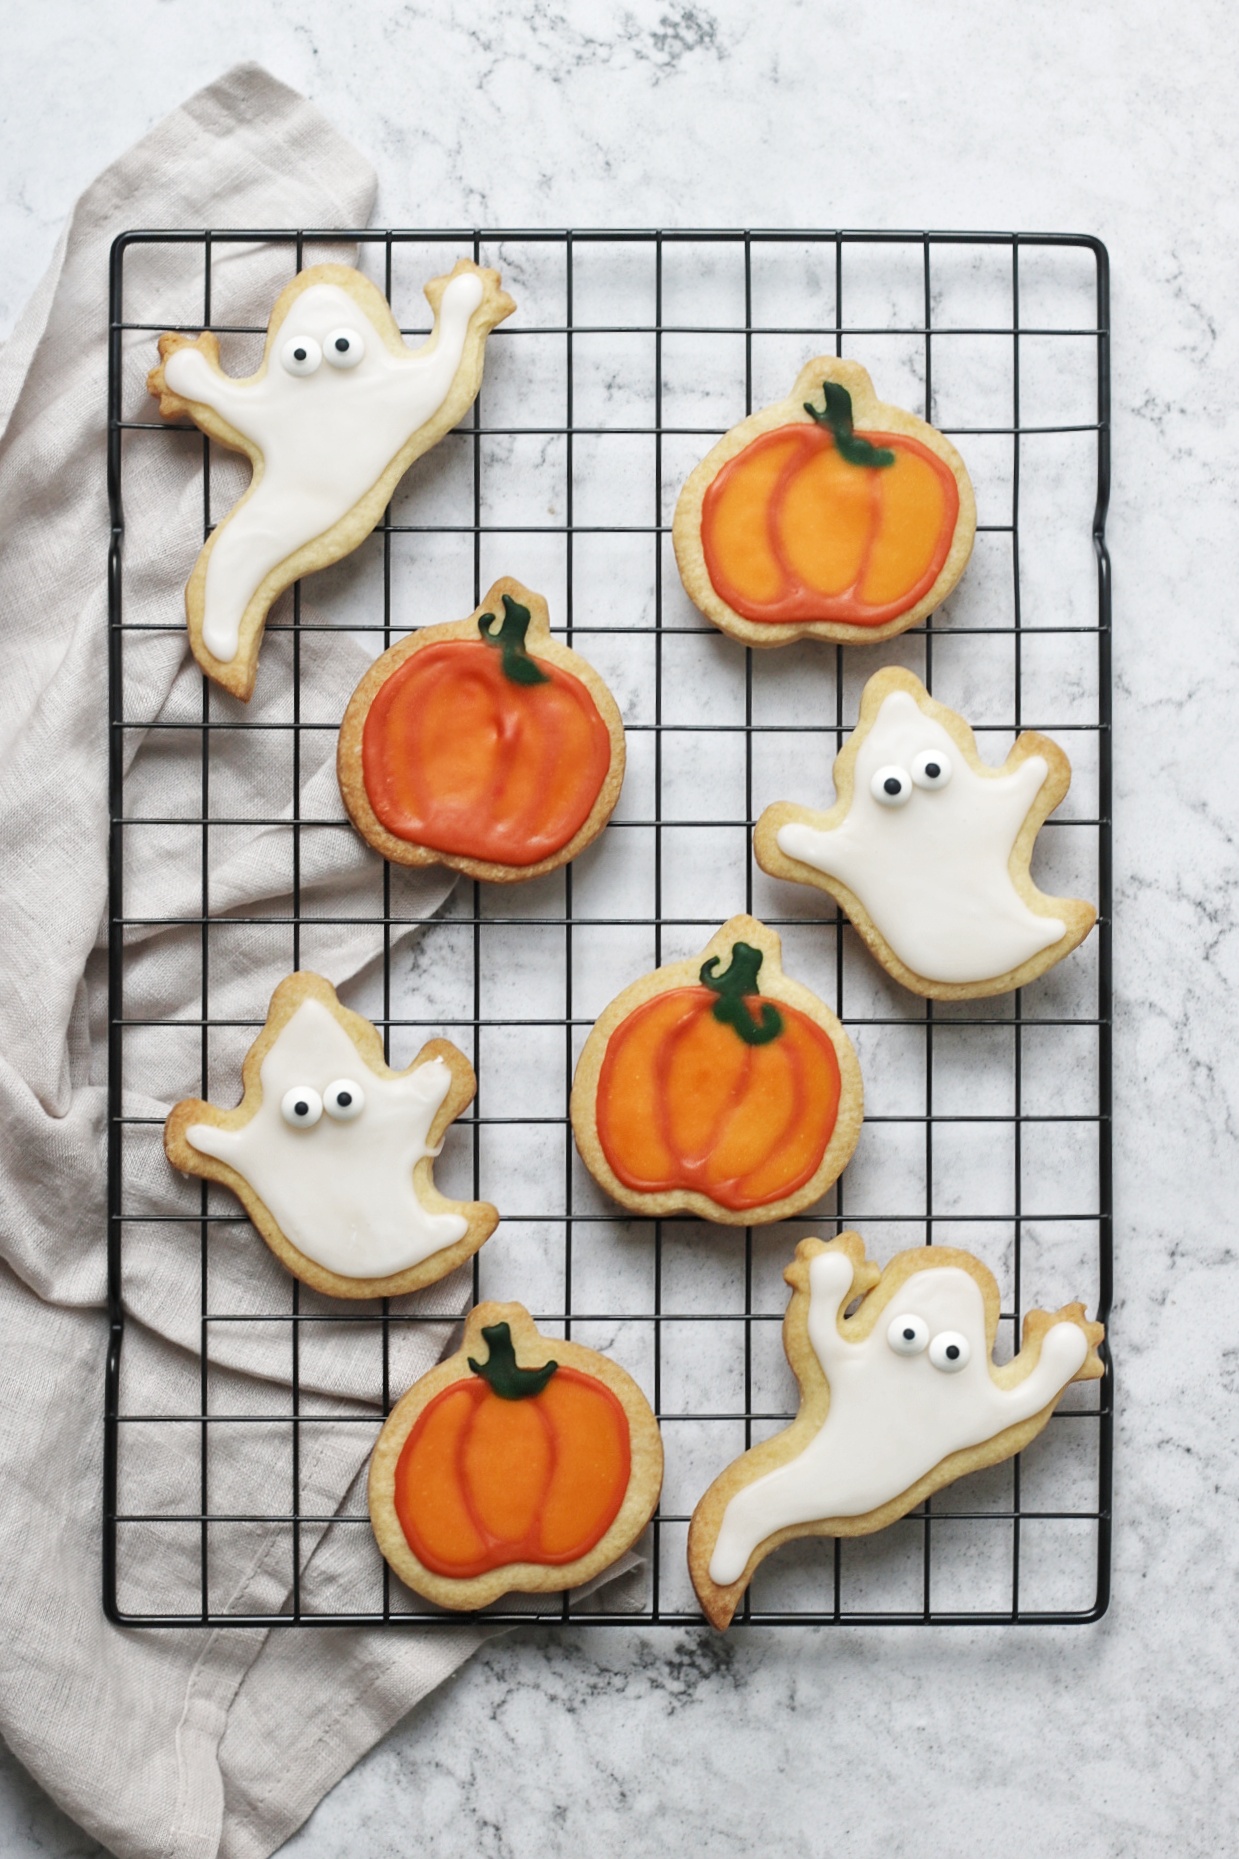 https://supperinthesuburbs.com/wp-content/uploads/2011/10/Ghosts-and-Pumpkins-Vegan-Halloween-Sugar-Cookies.jpeg